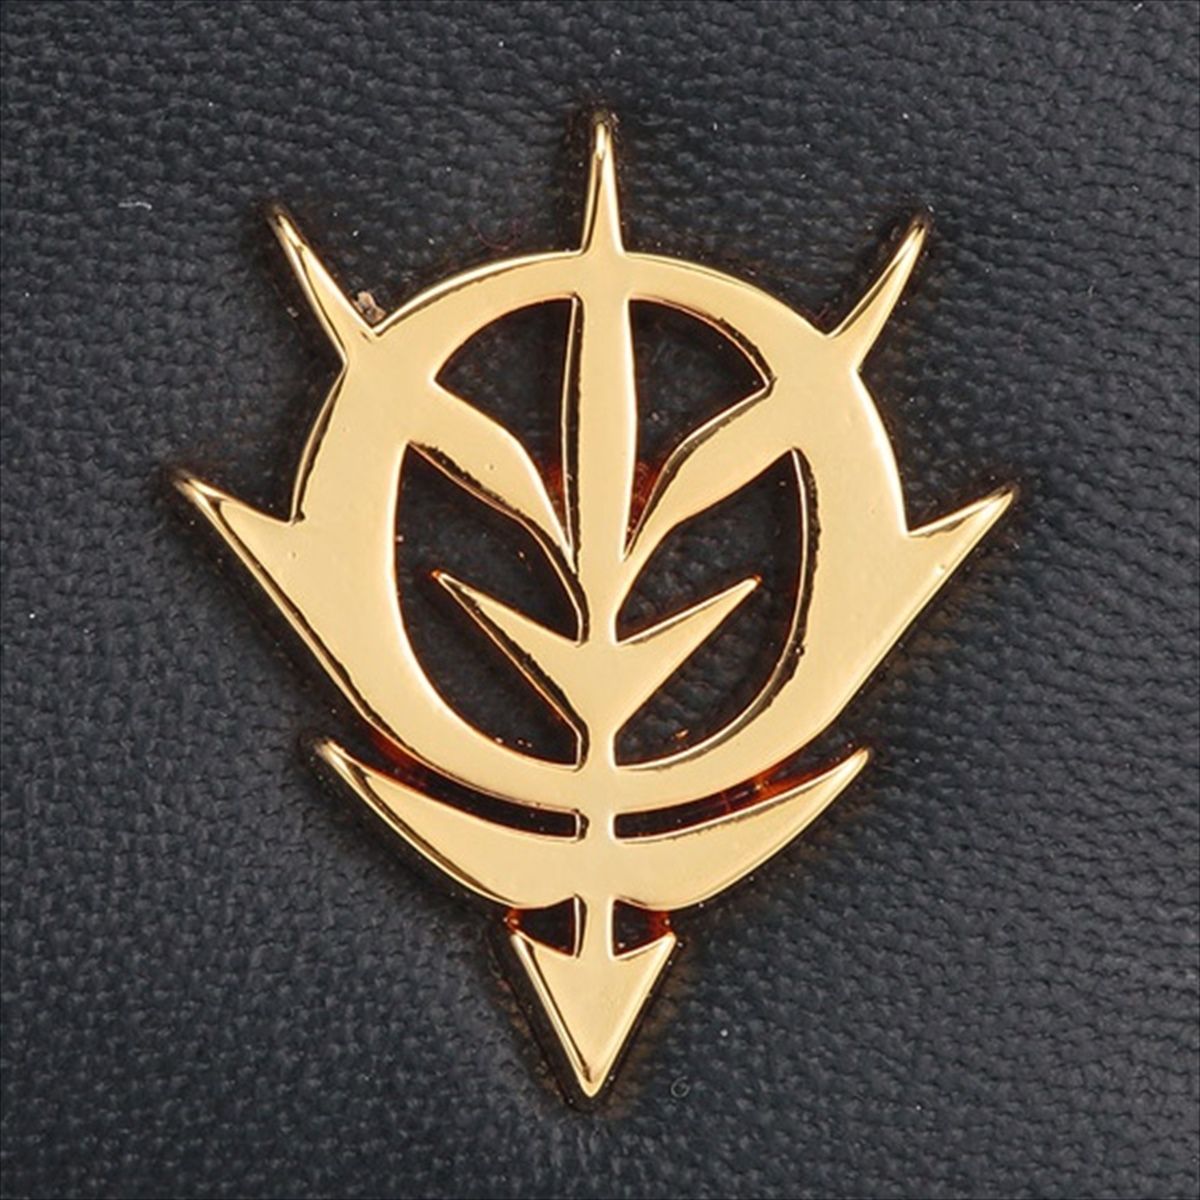 Mobile Suit Gundam Zeon Golden Emblem Passcase